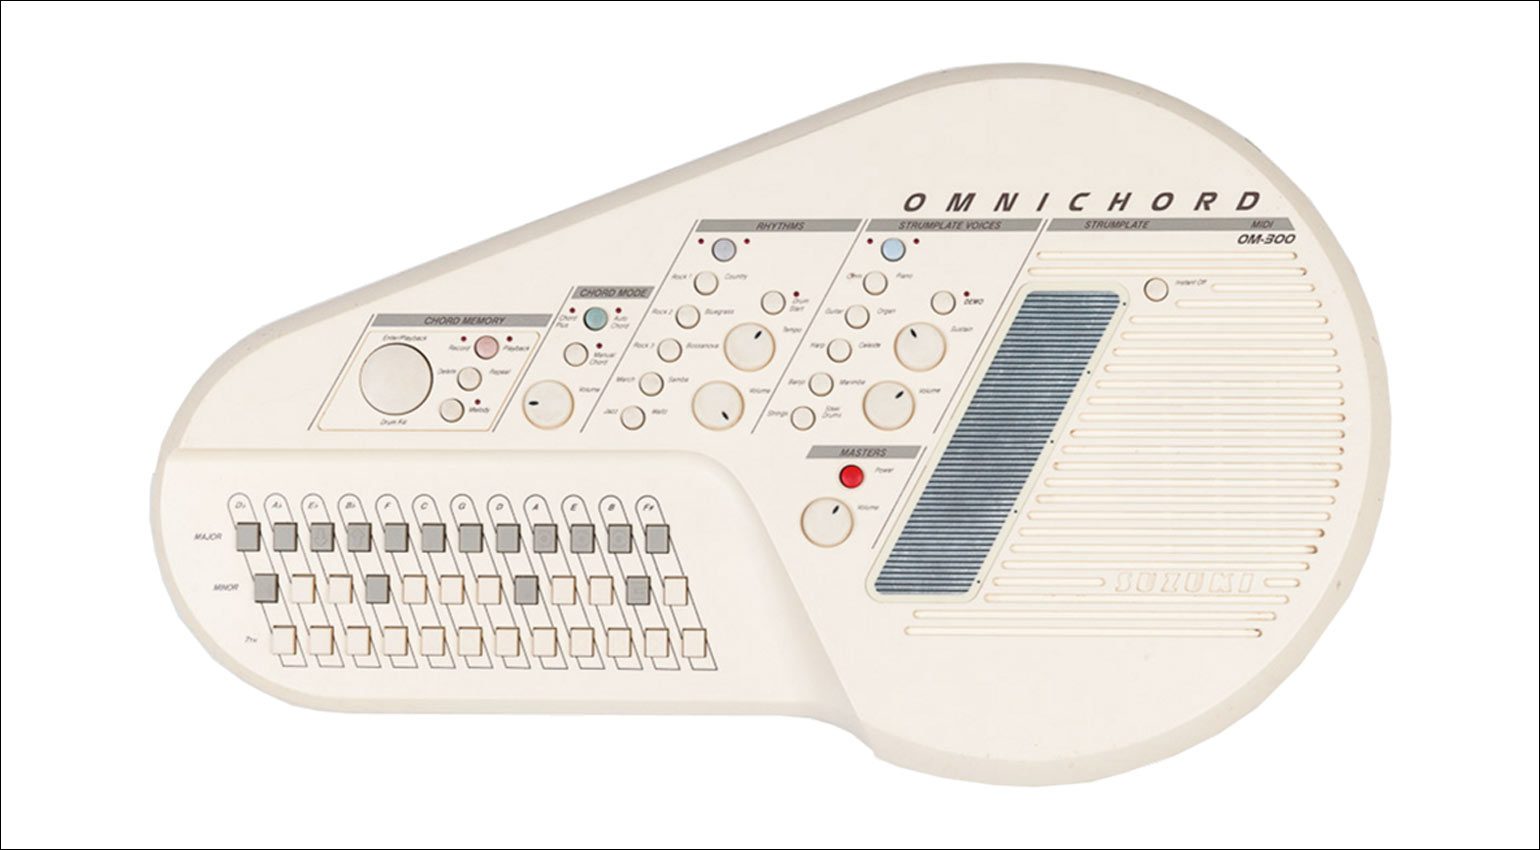 Suzuki Omnichord OM-300